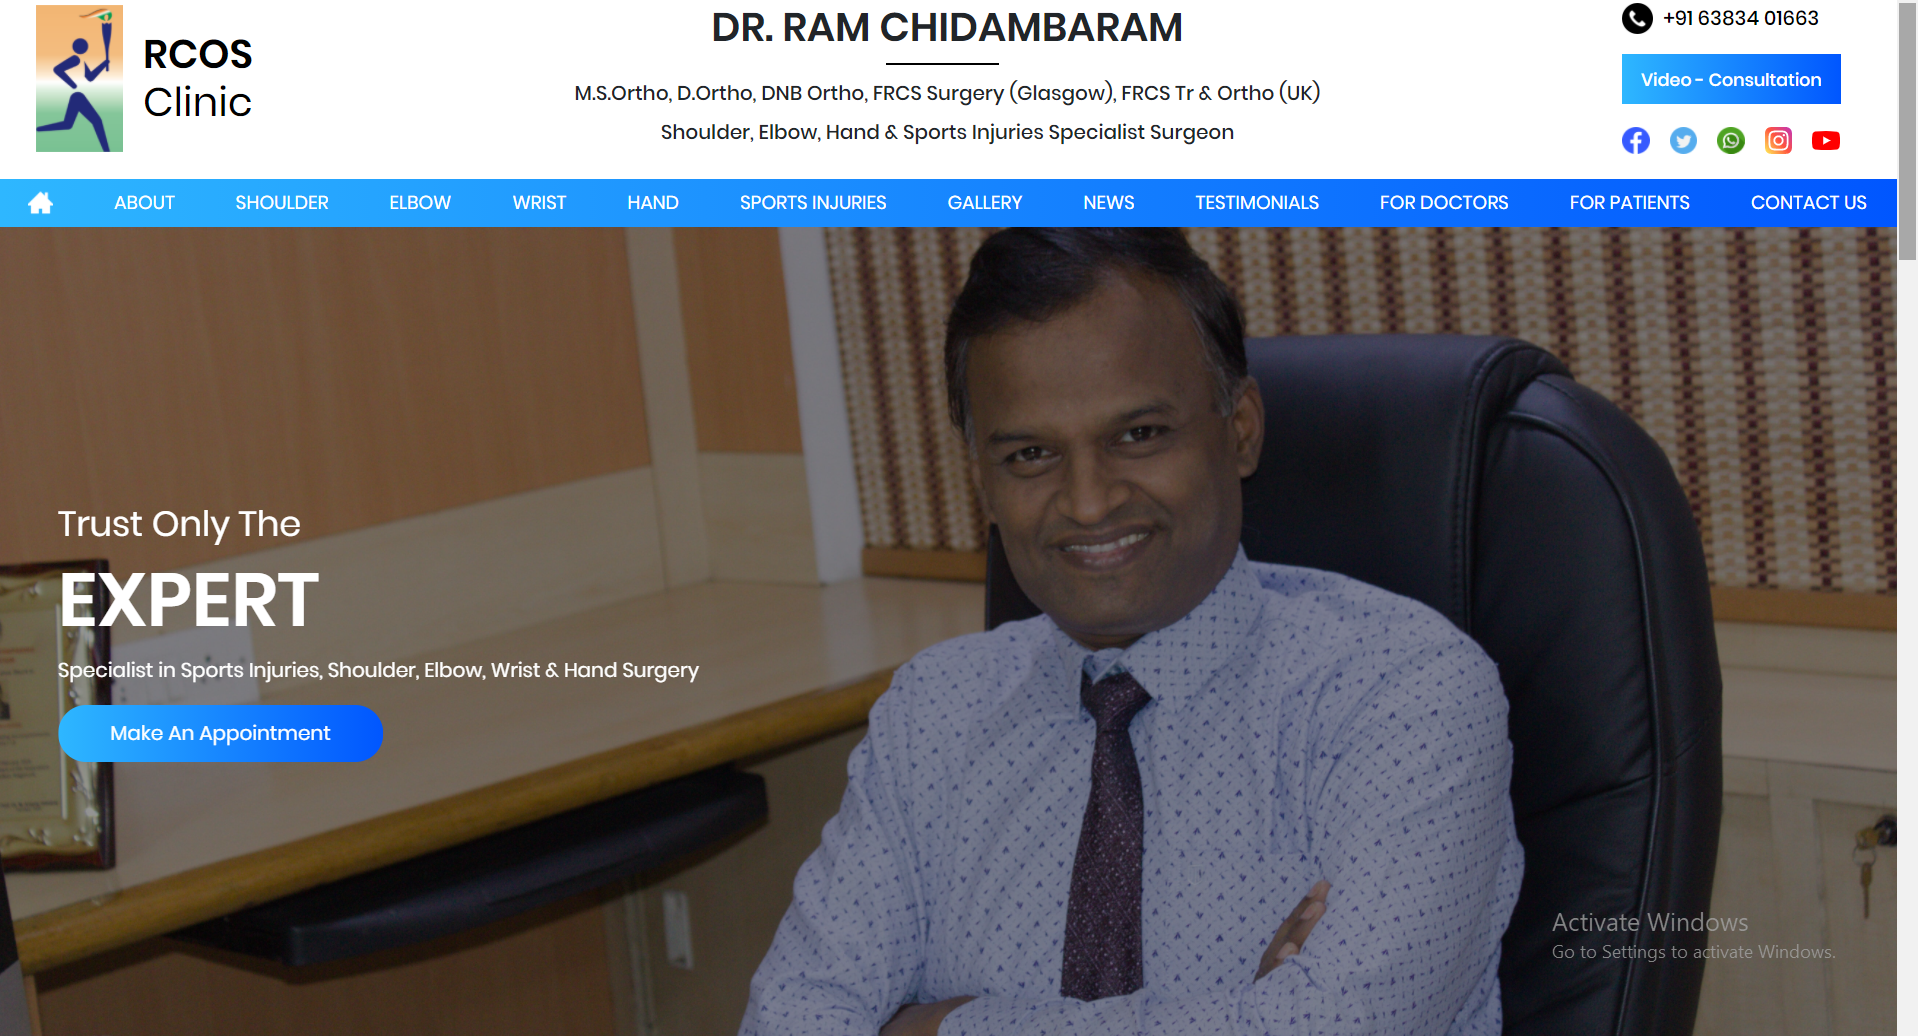 Dr Ram Chidambaram M.S.Ortho